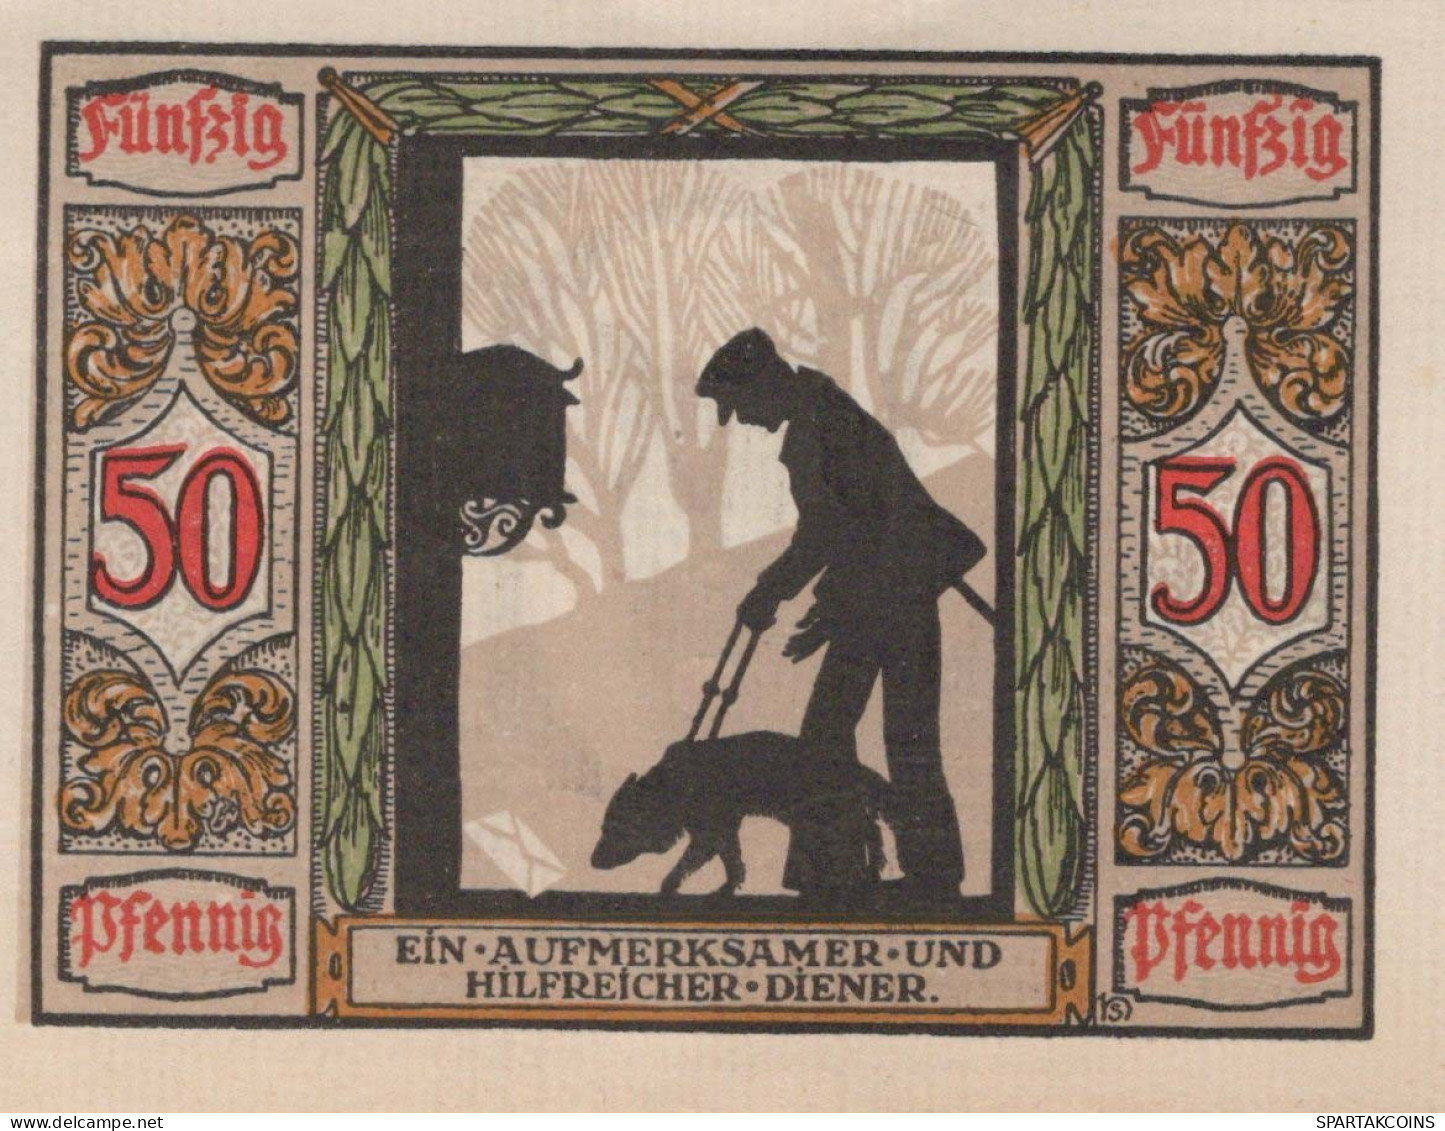 50 PFENNIG 1921 Stadt OLDENBURG IN OLDENBURG Oldenburg UNC DEUTSCHLAND #PI034 - [11] Local Banknote Issues